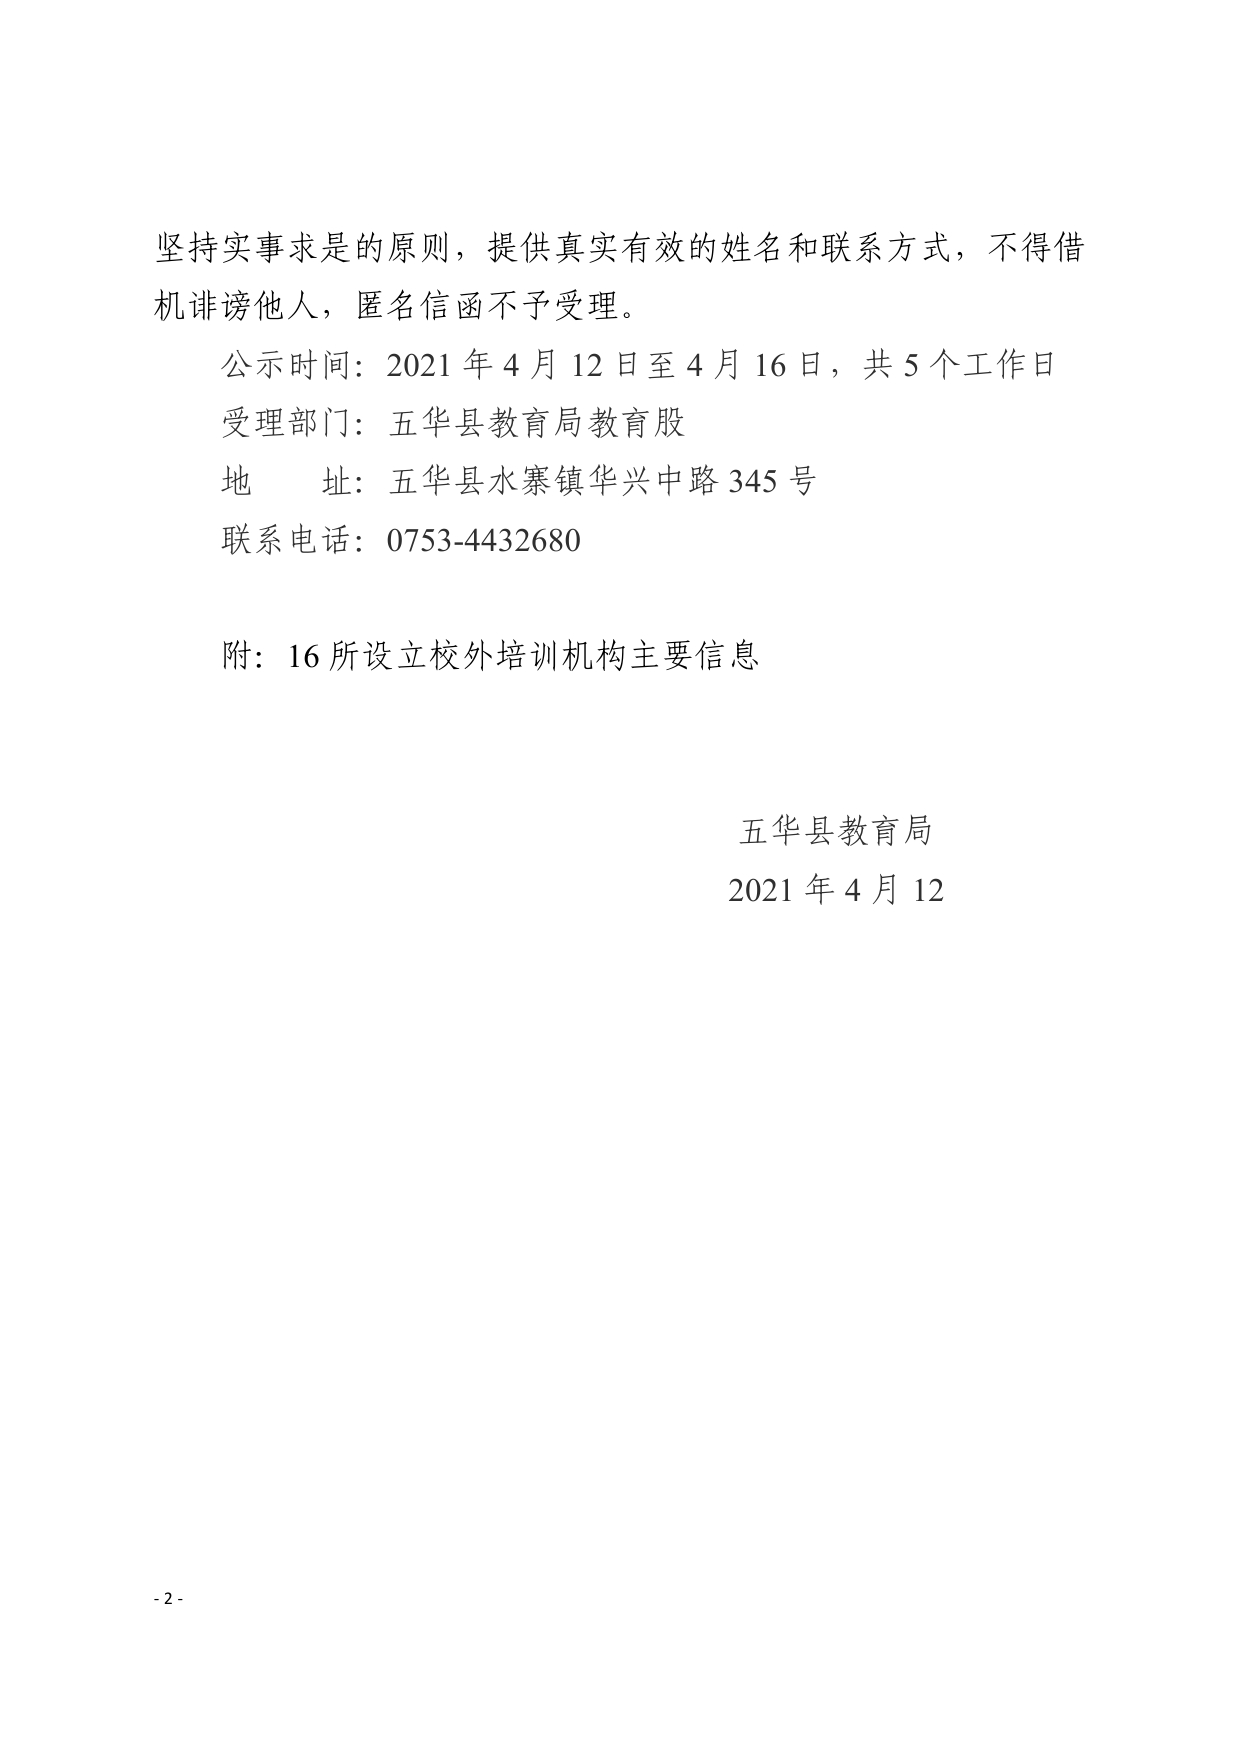 关于同意五华县水寨镇同诚教育培训有限公司等十六所校外培训机构设立的公示0001.jpg